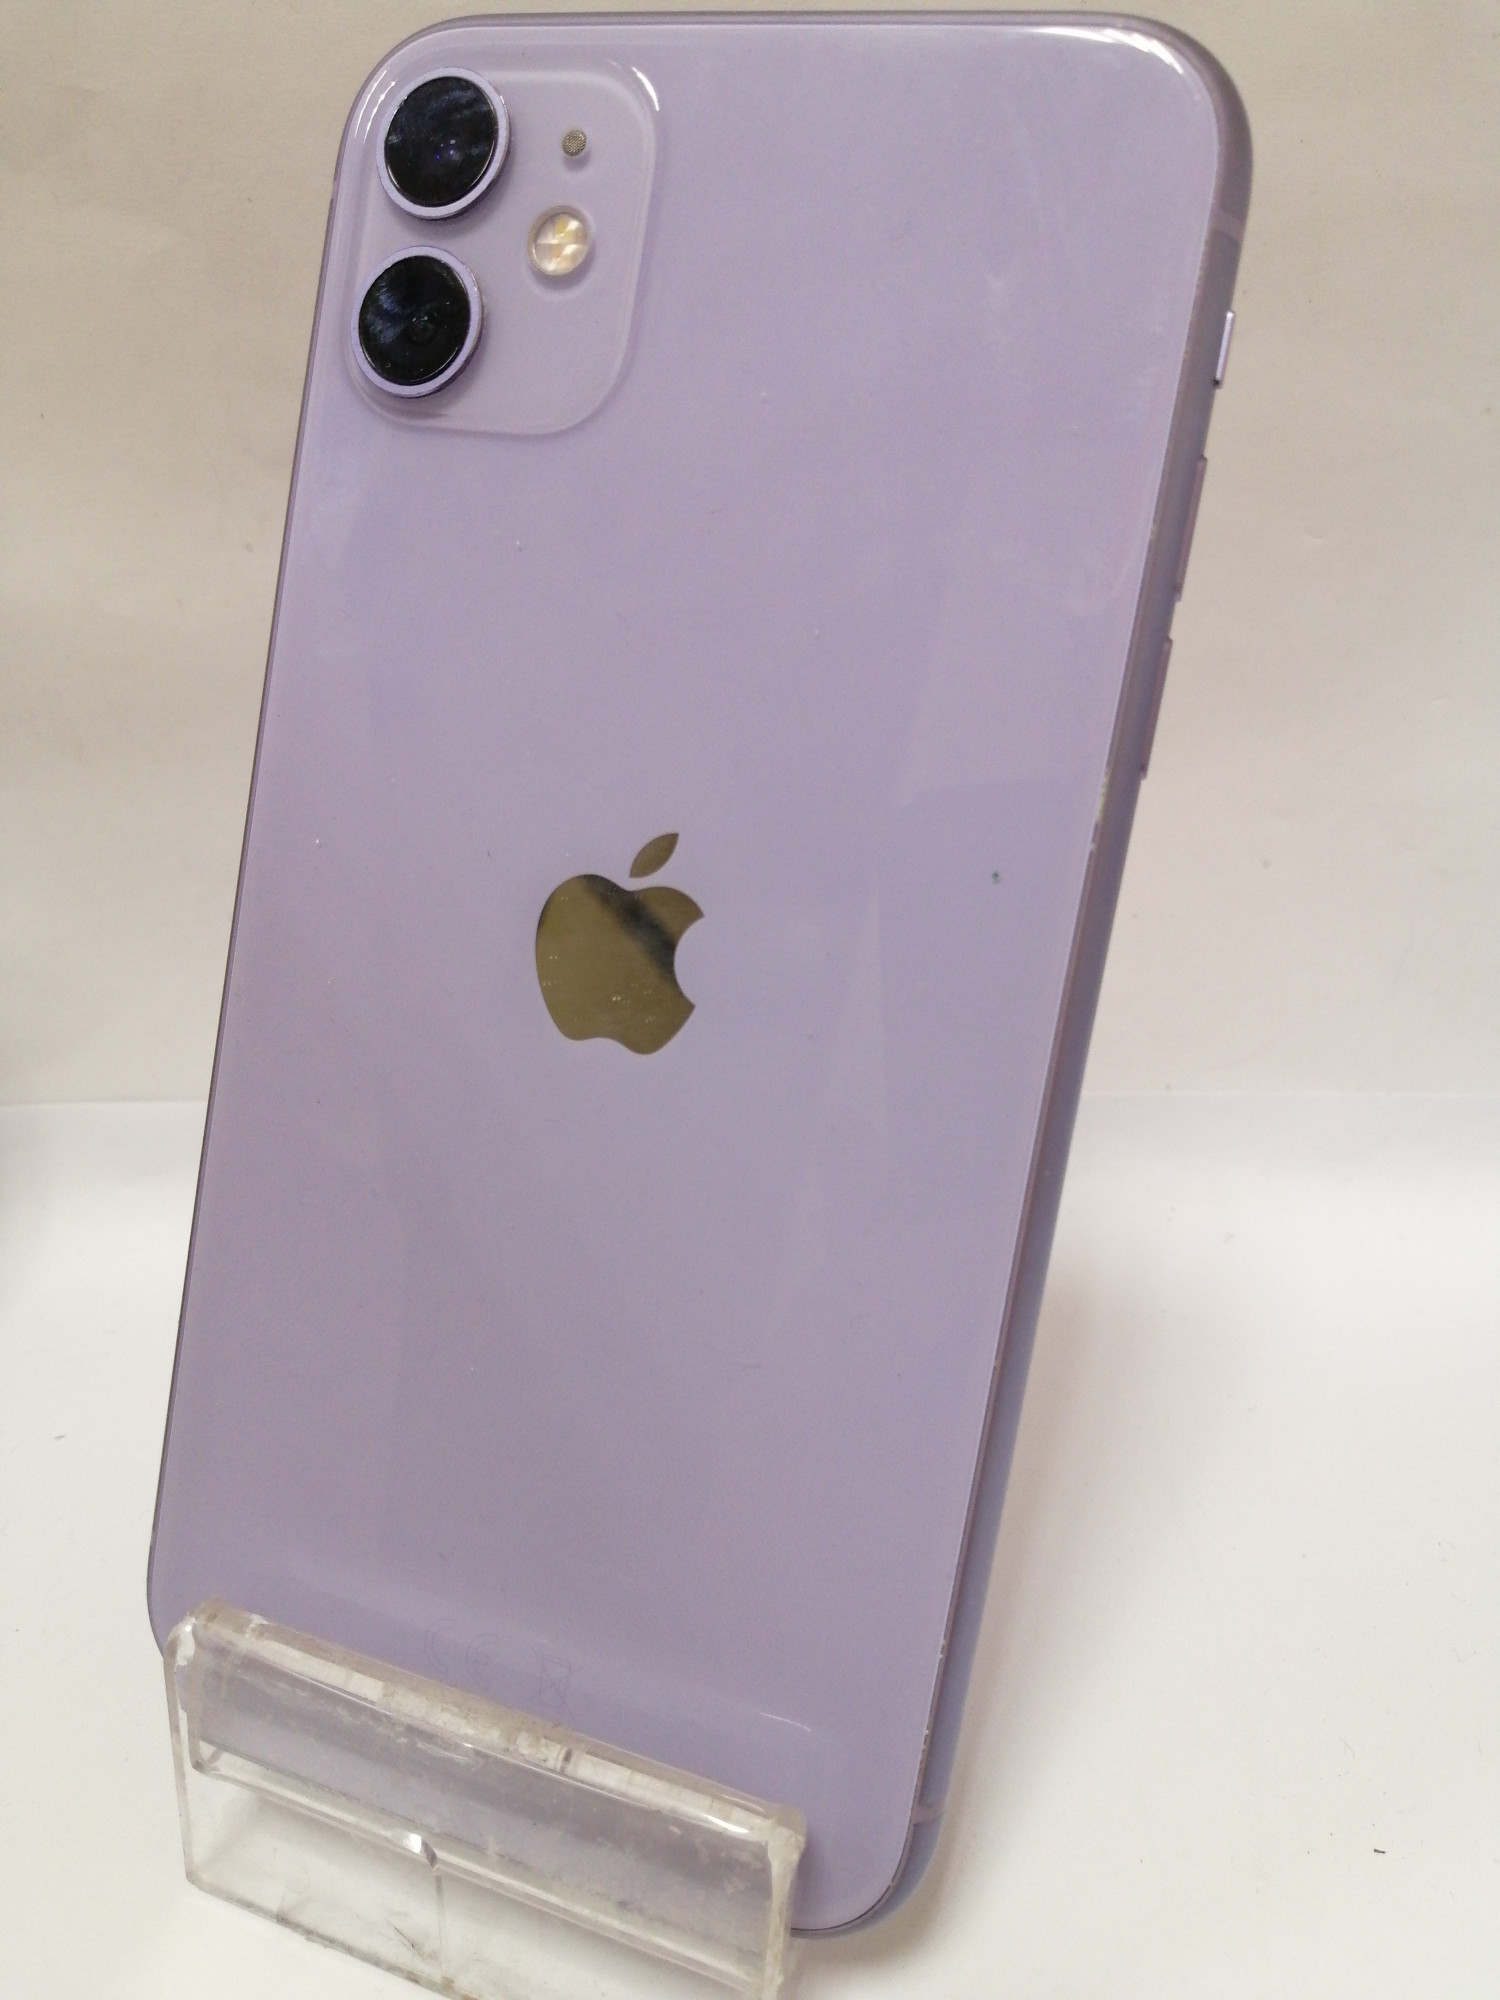 Apple iPhone 11 128GB Purple (MWLJ2) 2